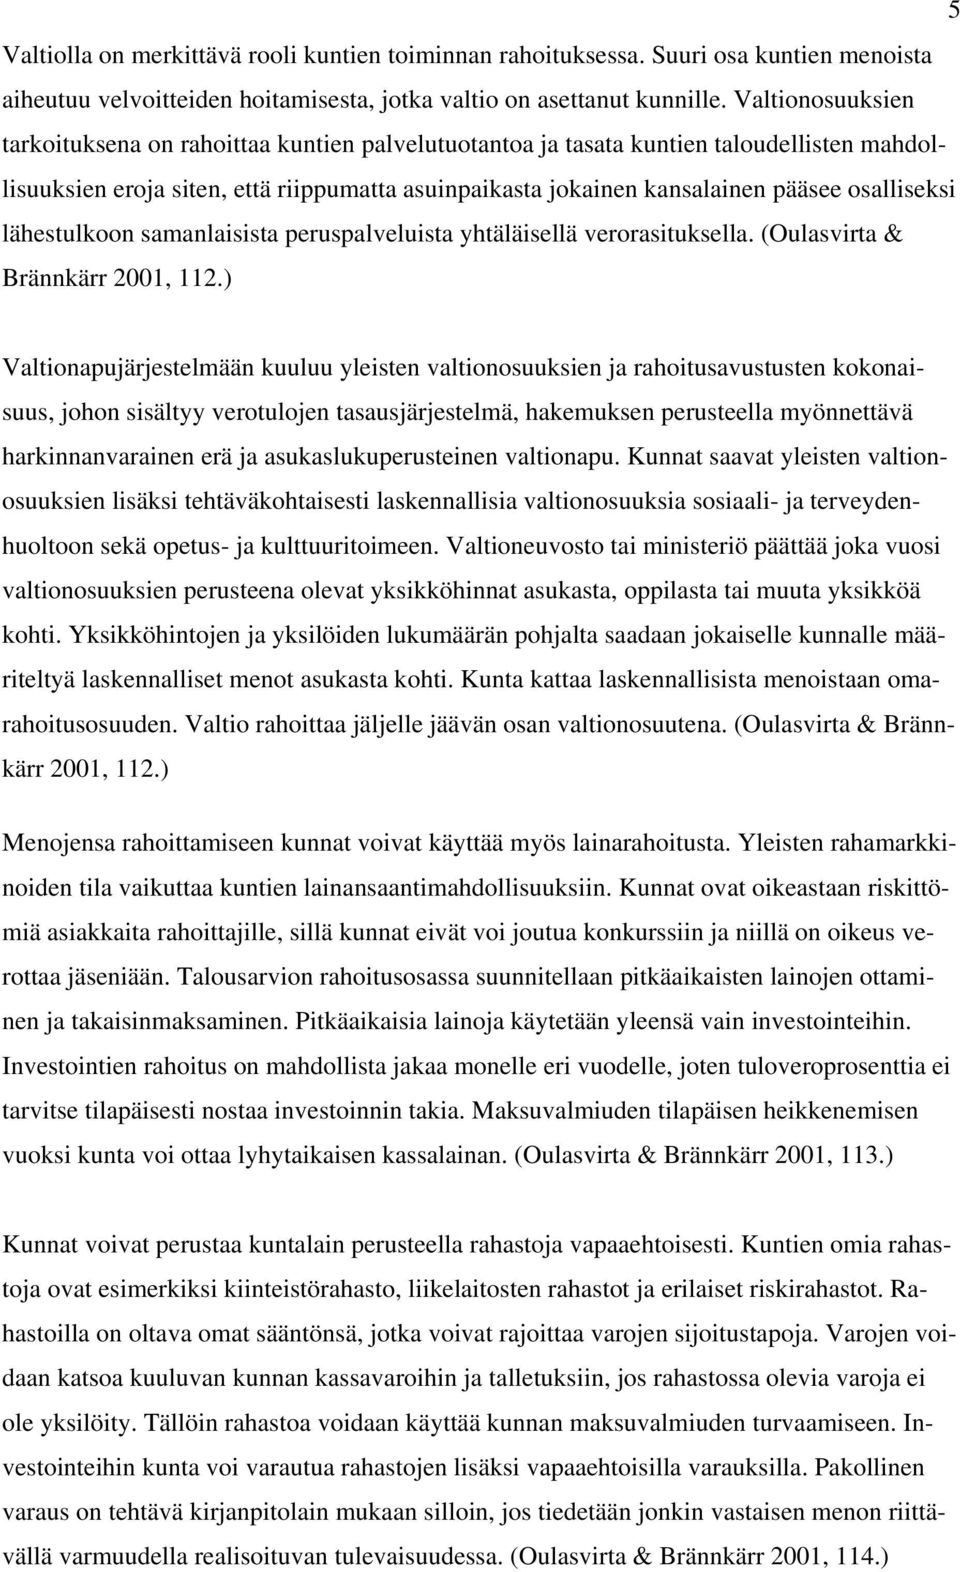 osalliseksi lähestulkoon samanlaisista peruspalveluista yhtäläisellä verorasituksella. (Oulasvirta & Brännkärr 2001, 112.